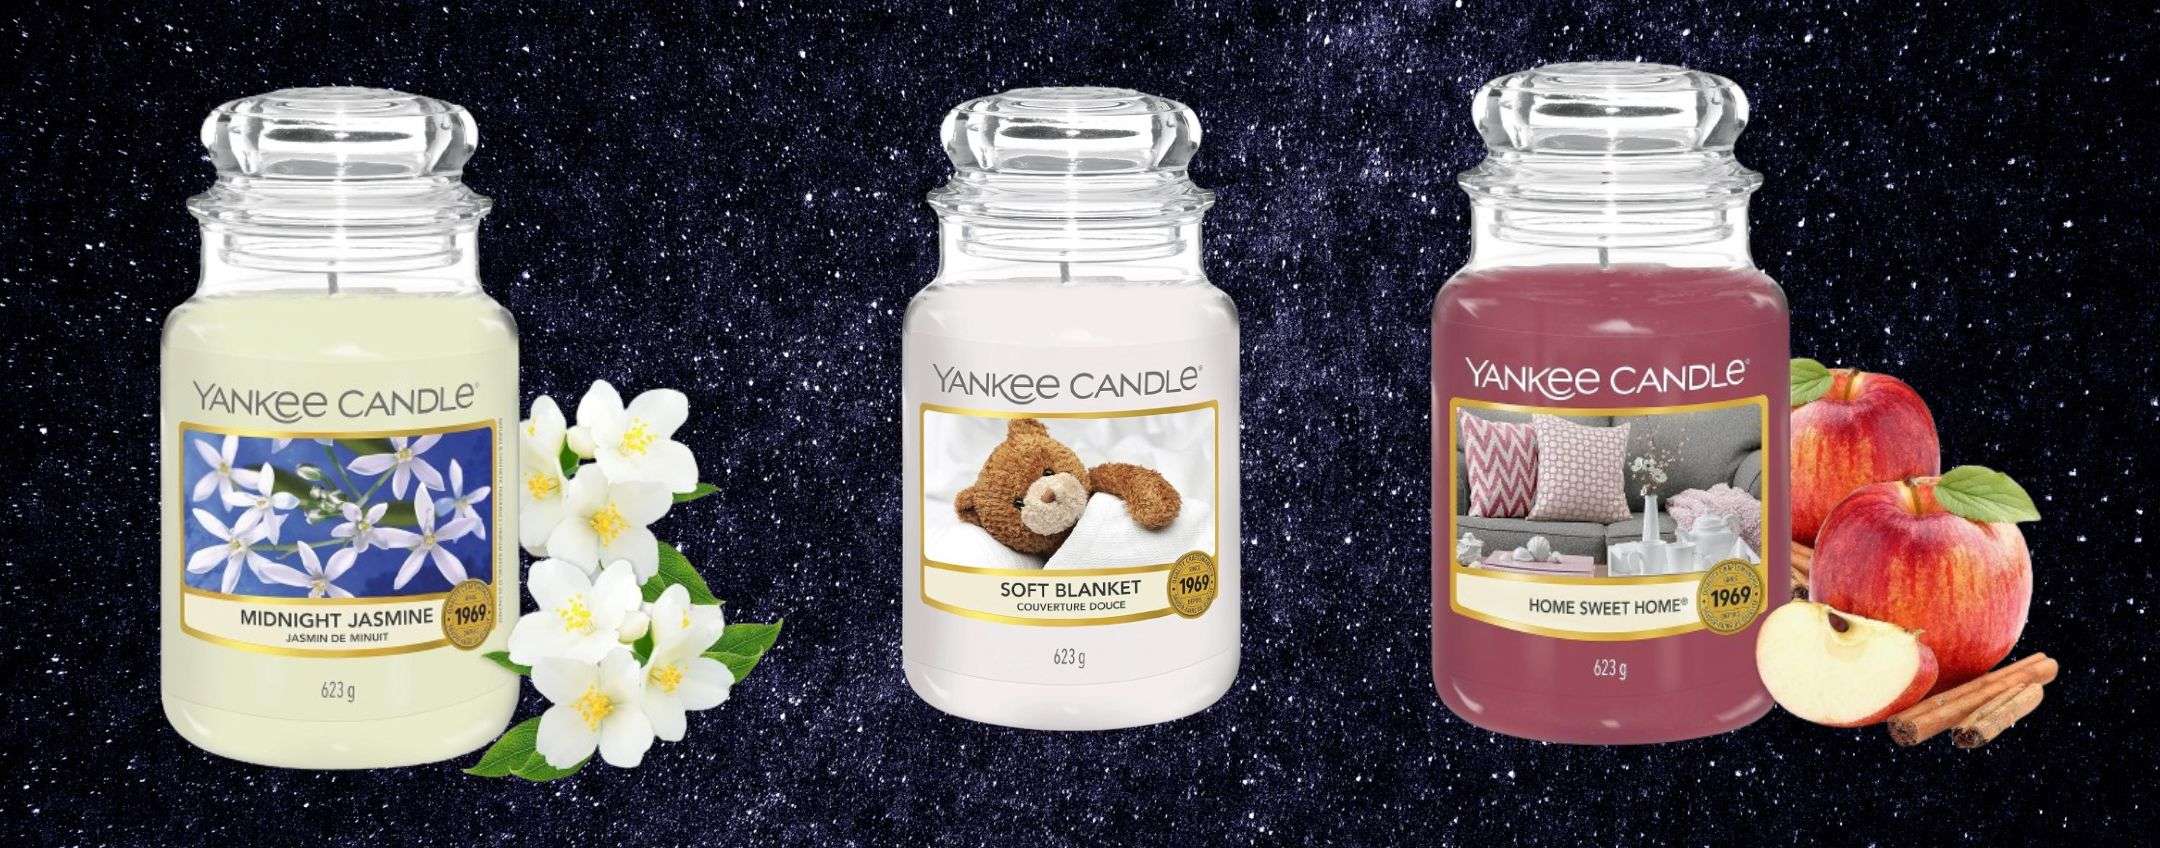 Yankee Candle in offerta su : sconti fino al 43% su set regalo e  candele!